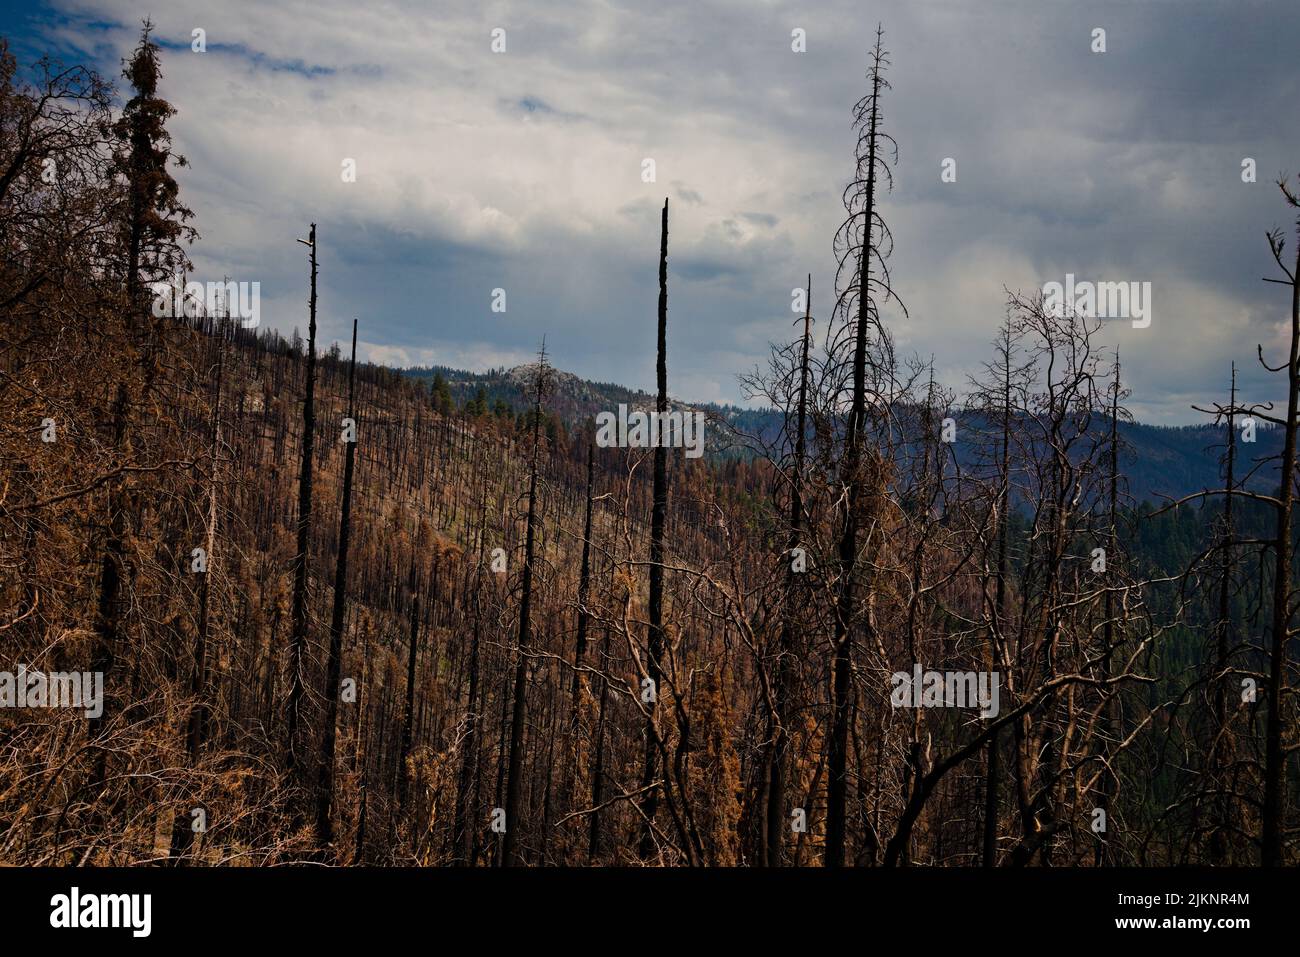 Landschaft mit verheerenden Auswirkungen des Waldbrands vom Herbst 2021 im Sequoia Nat'l Park. Auf einem bedrohlichen Himmel aufgenommen. Ein anderer Blick auf die Veränderung der Natur. Stockfoto